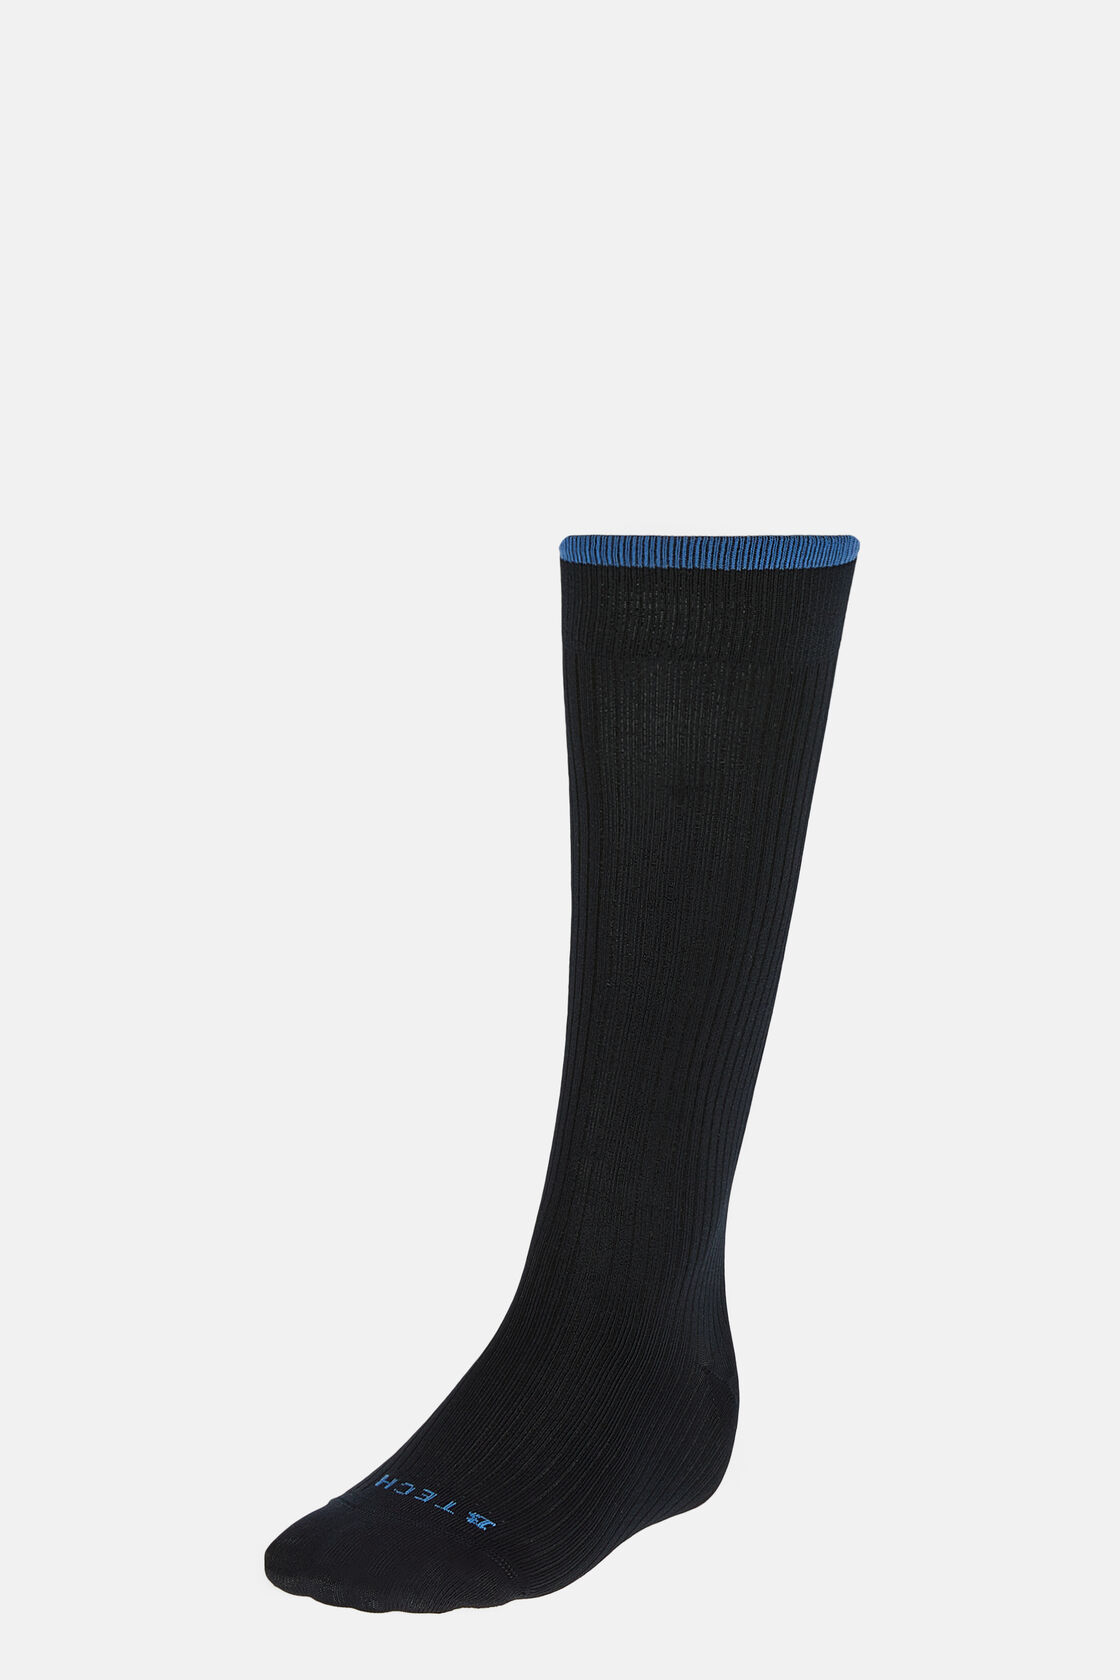 Κάλτσες με μοτίβο ριπ από τεχνικό νήμα, Navy blue, hi-res